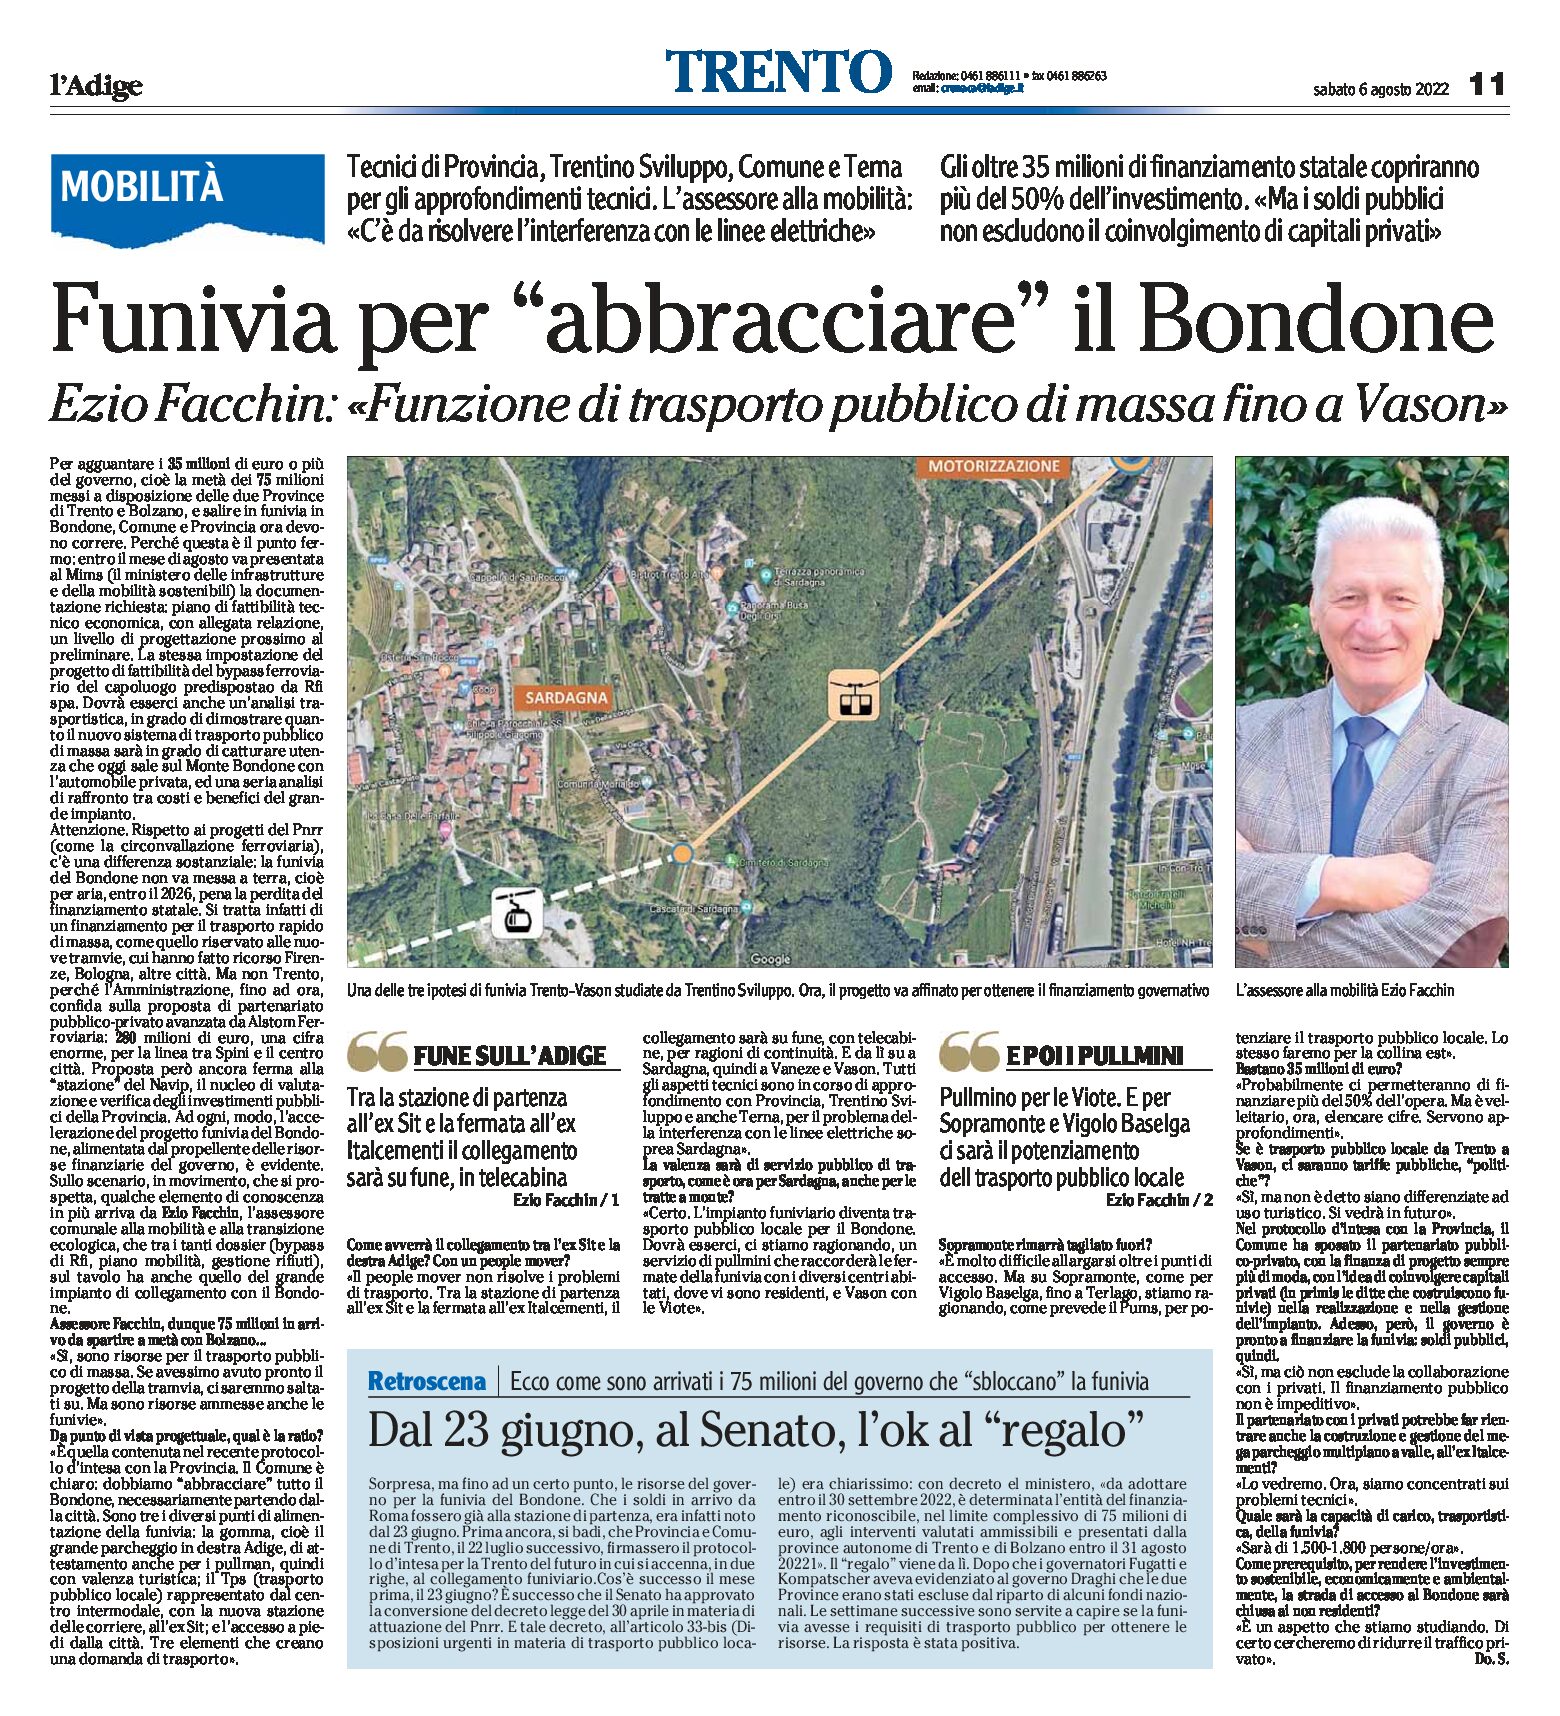 Trento: funivia per abbracciare il Bondone. Intervista a Facchin